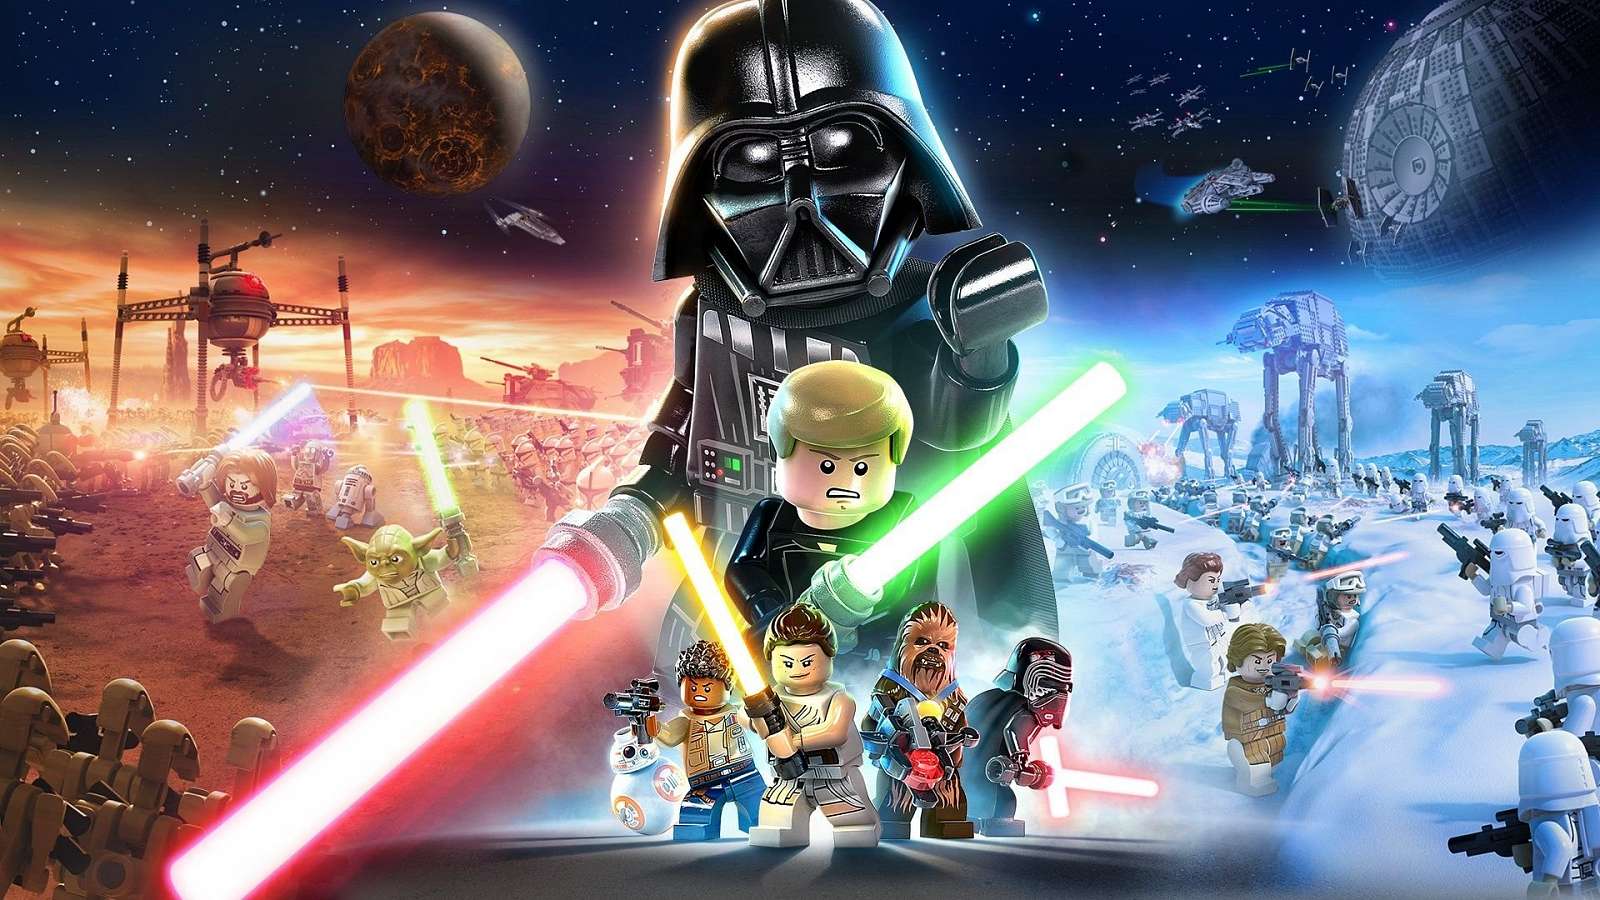 Podívejte se na další záběry z Lego Star Wars: The Skywalker Saga